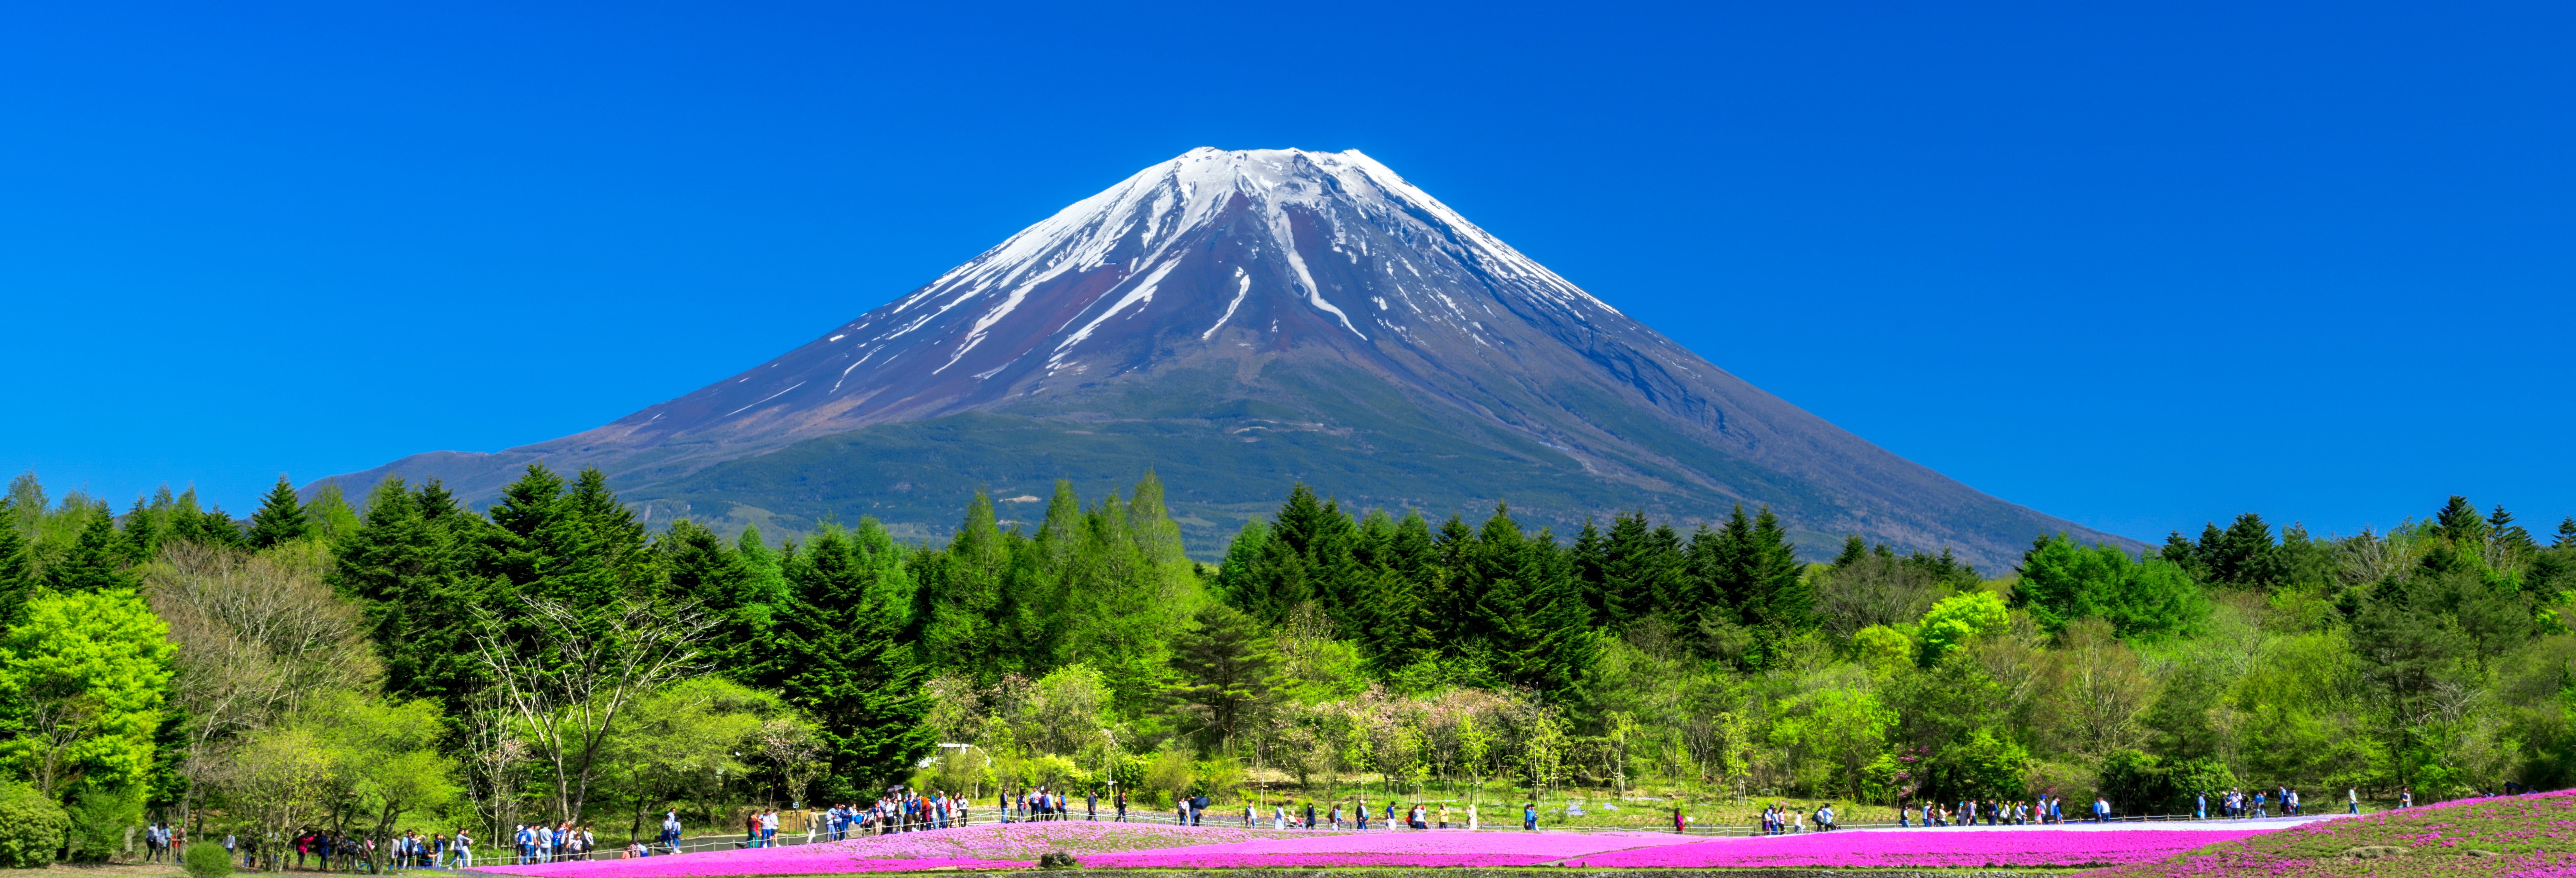 Escursione al Monte Fuji e raccolta di frutta